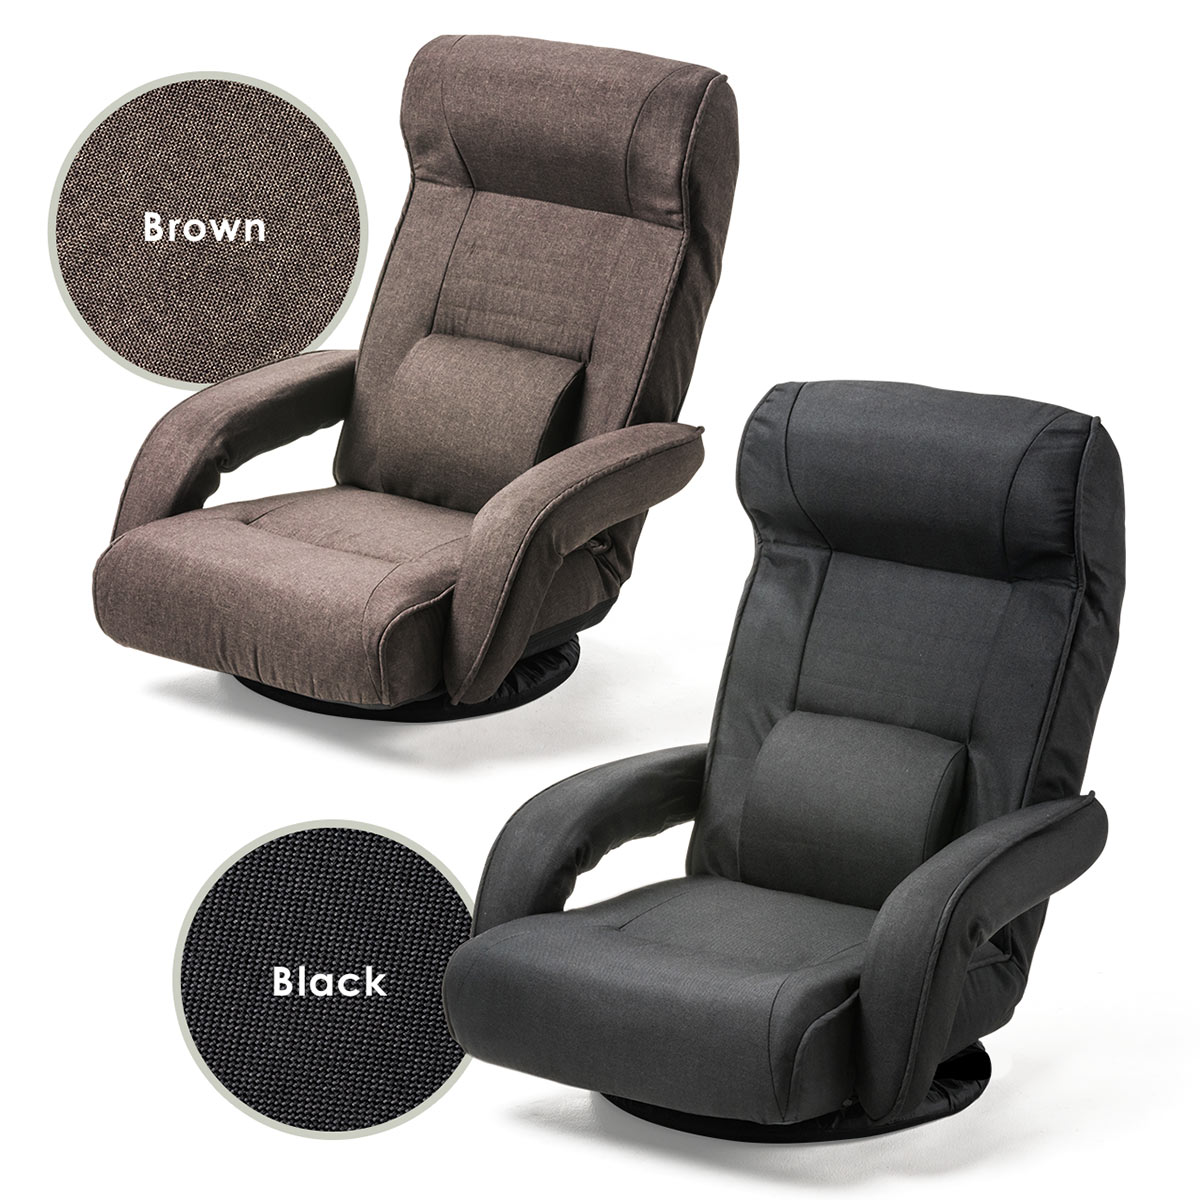 【楽天市場】サンワサプライ 回転座椅子 ポケットコイル クッション レバー式 リクライニング 連動 肘掛け ランバーサポート付き ブラック